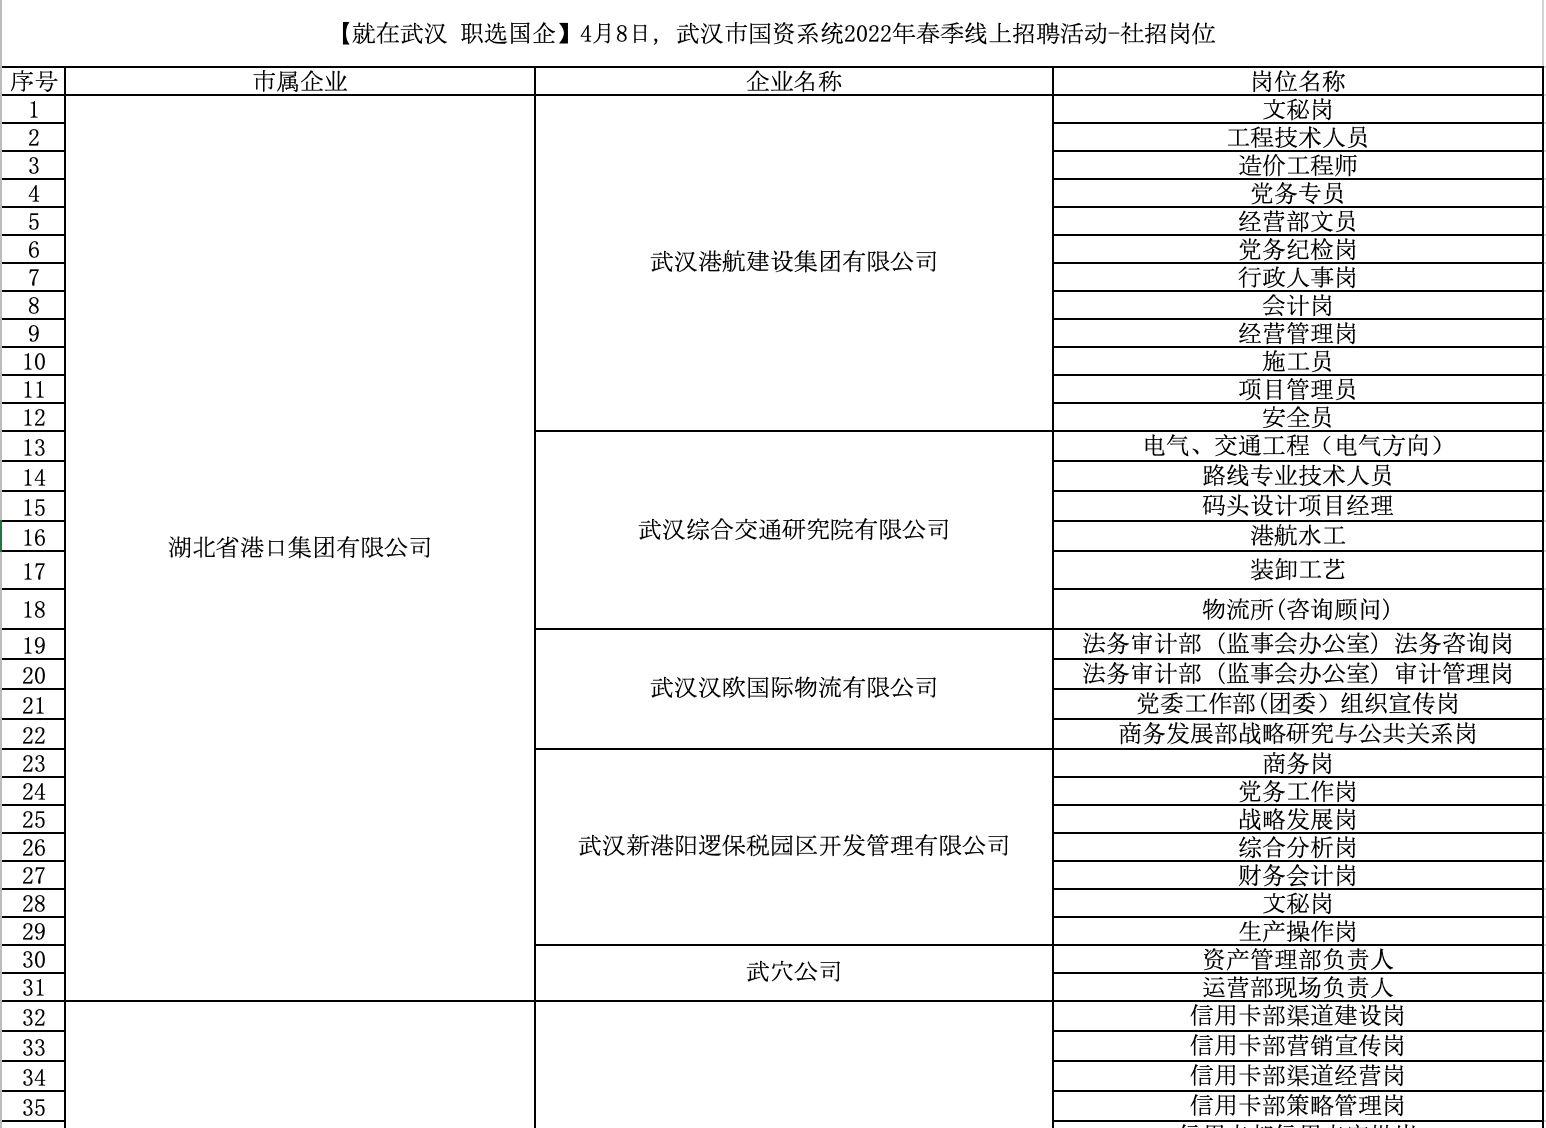 武汉162家国企公开招聘1719人，部分岗位年薪达30万元